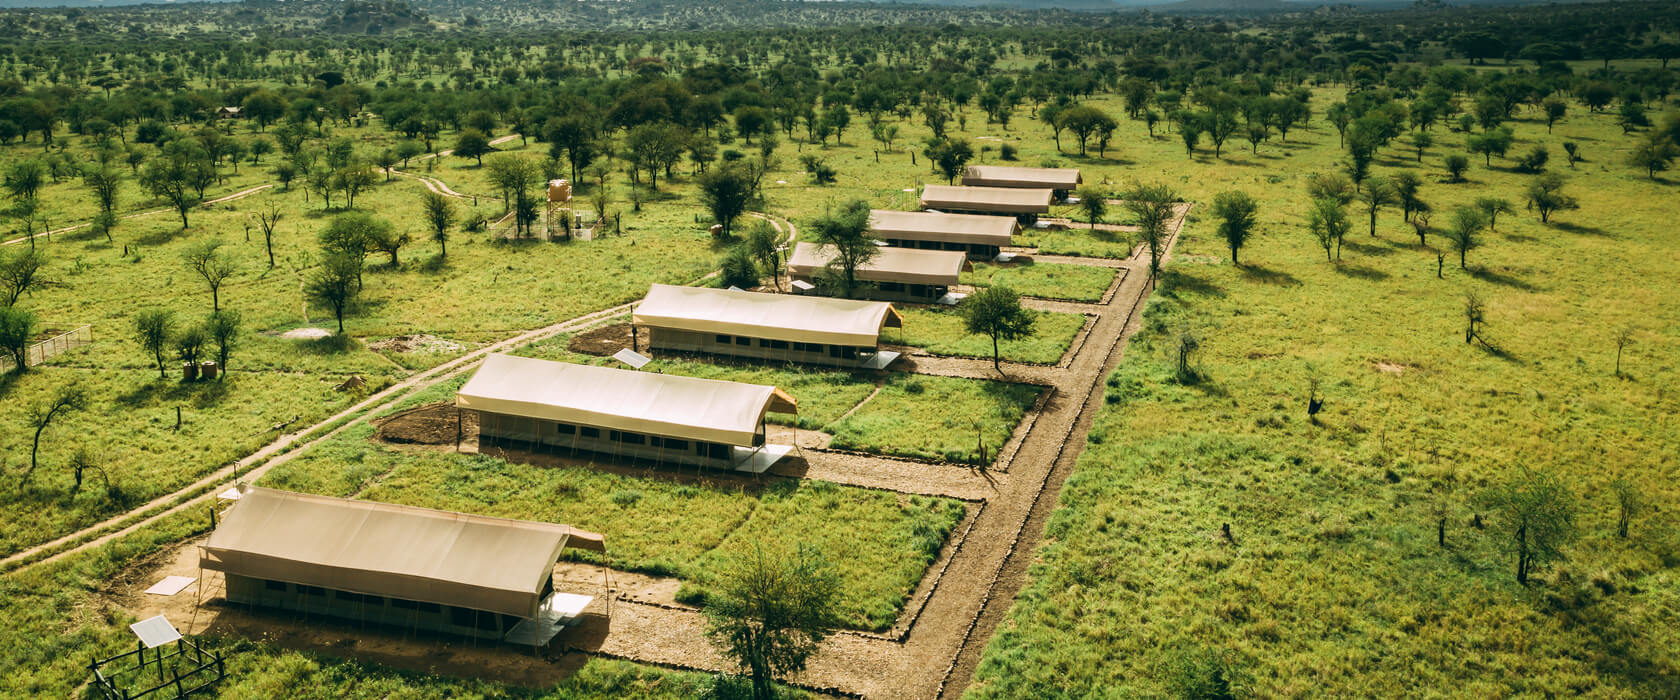 塞伦盖蒂托蒂利斯营地 - 塞伦盖蒂的住宿 – 轻松旅行坦桑尼亚